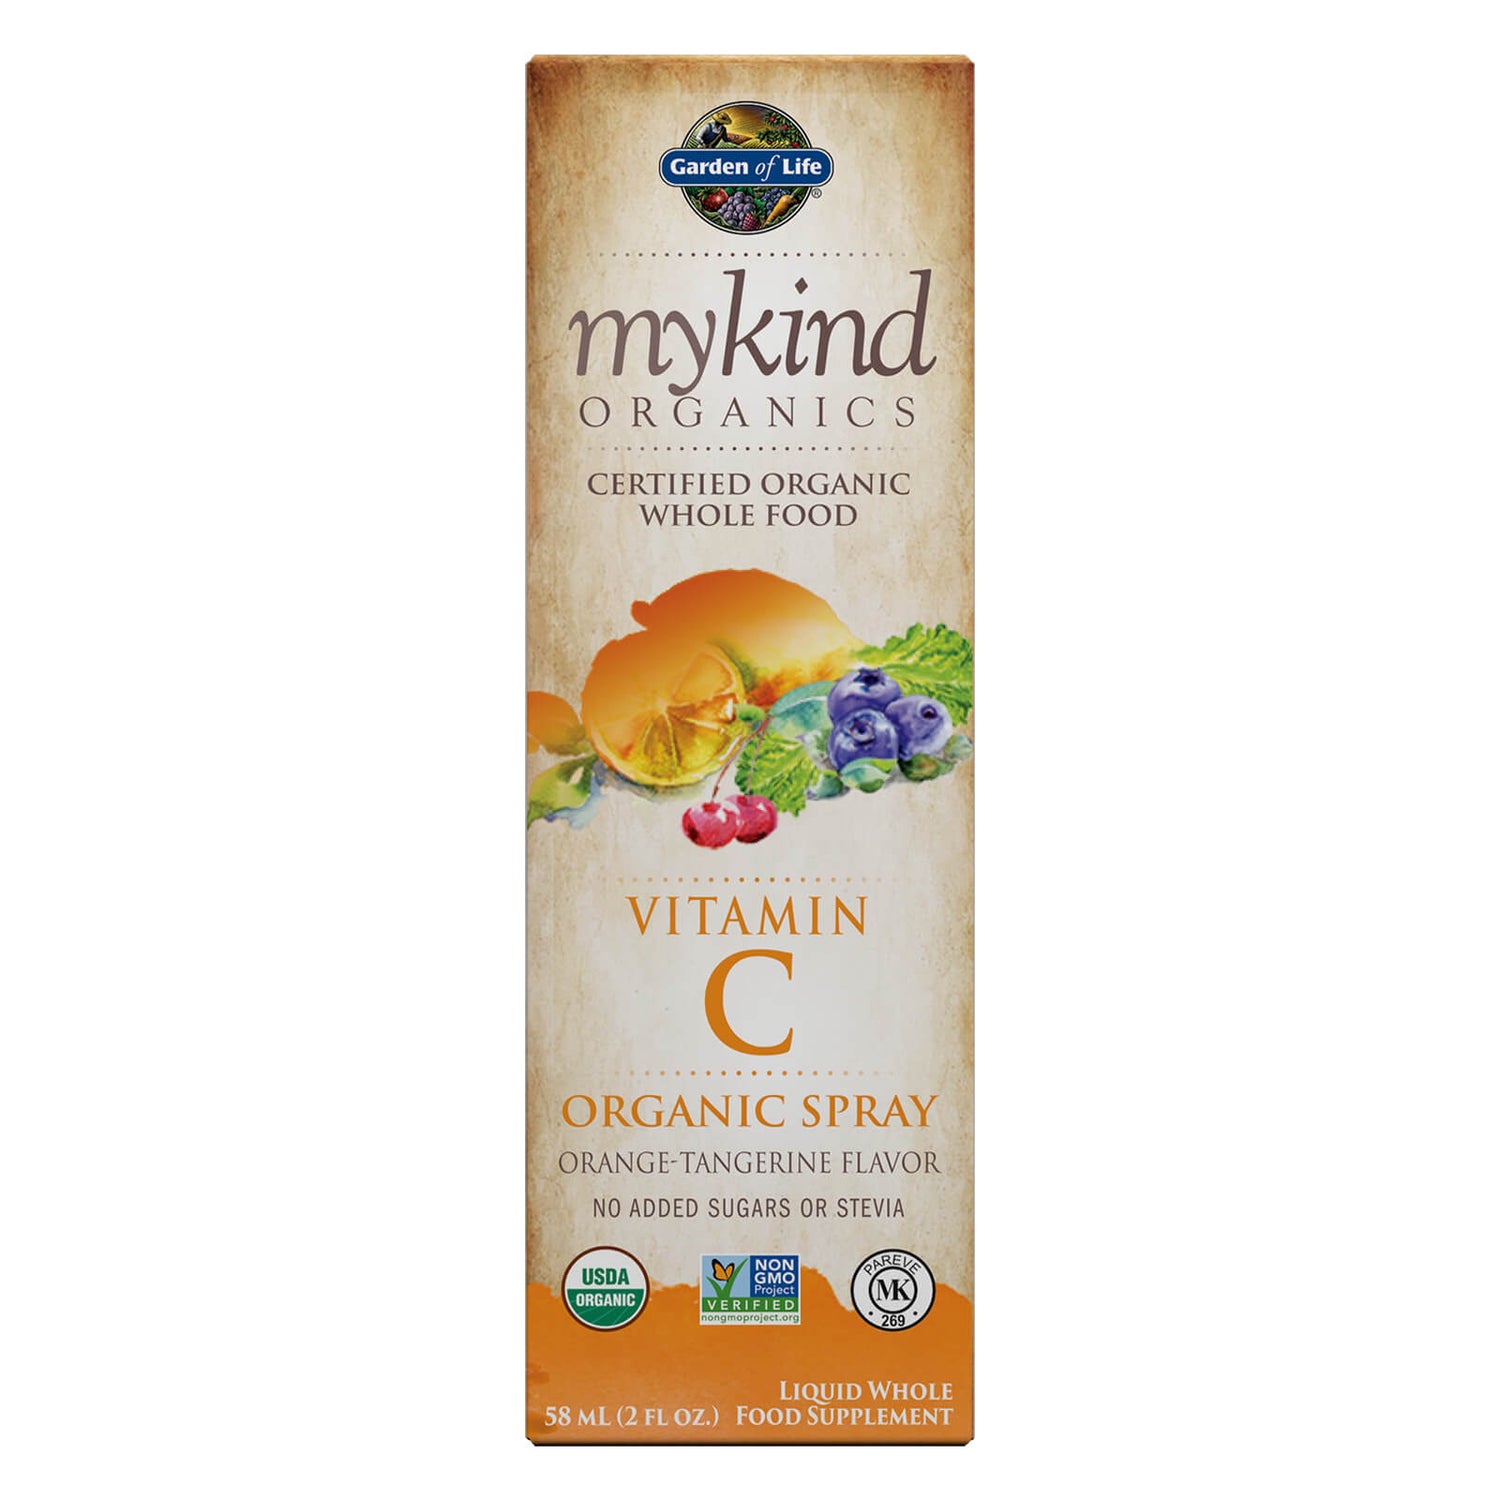 mykind Organics Vitamine C Spray - sinaasappel 58ml